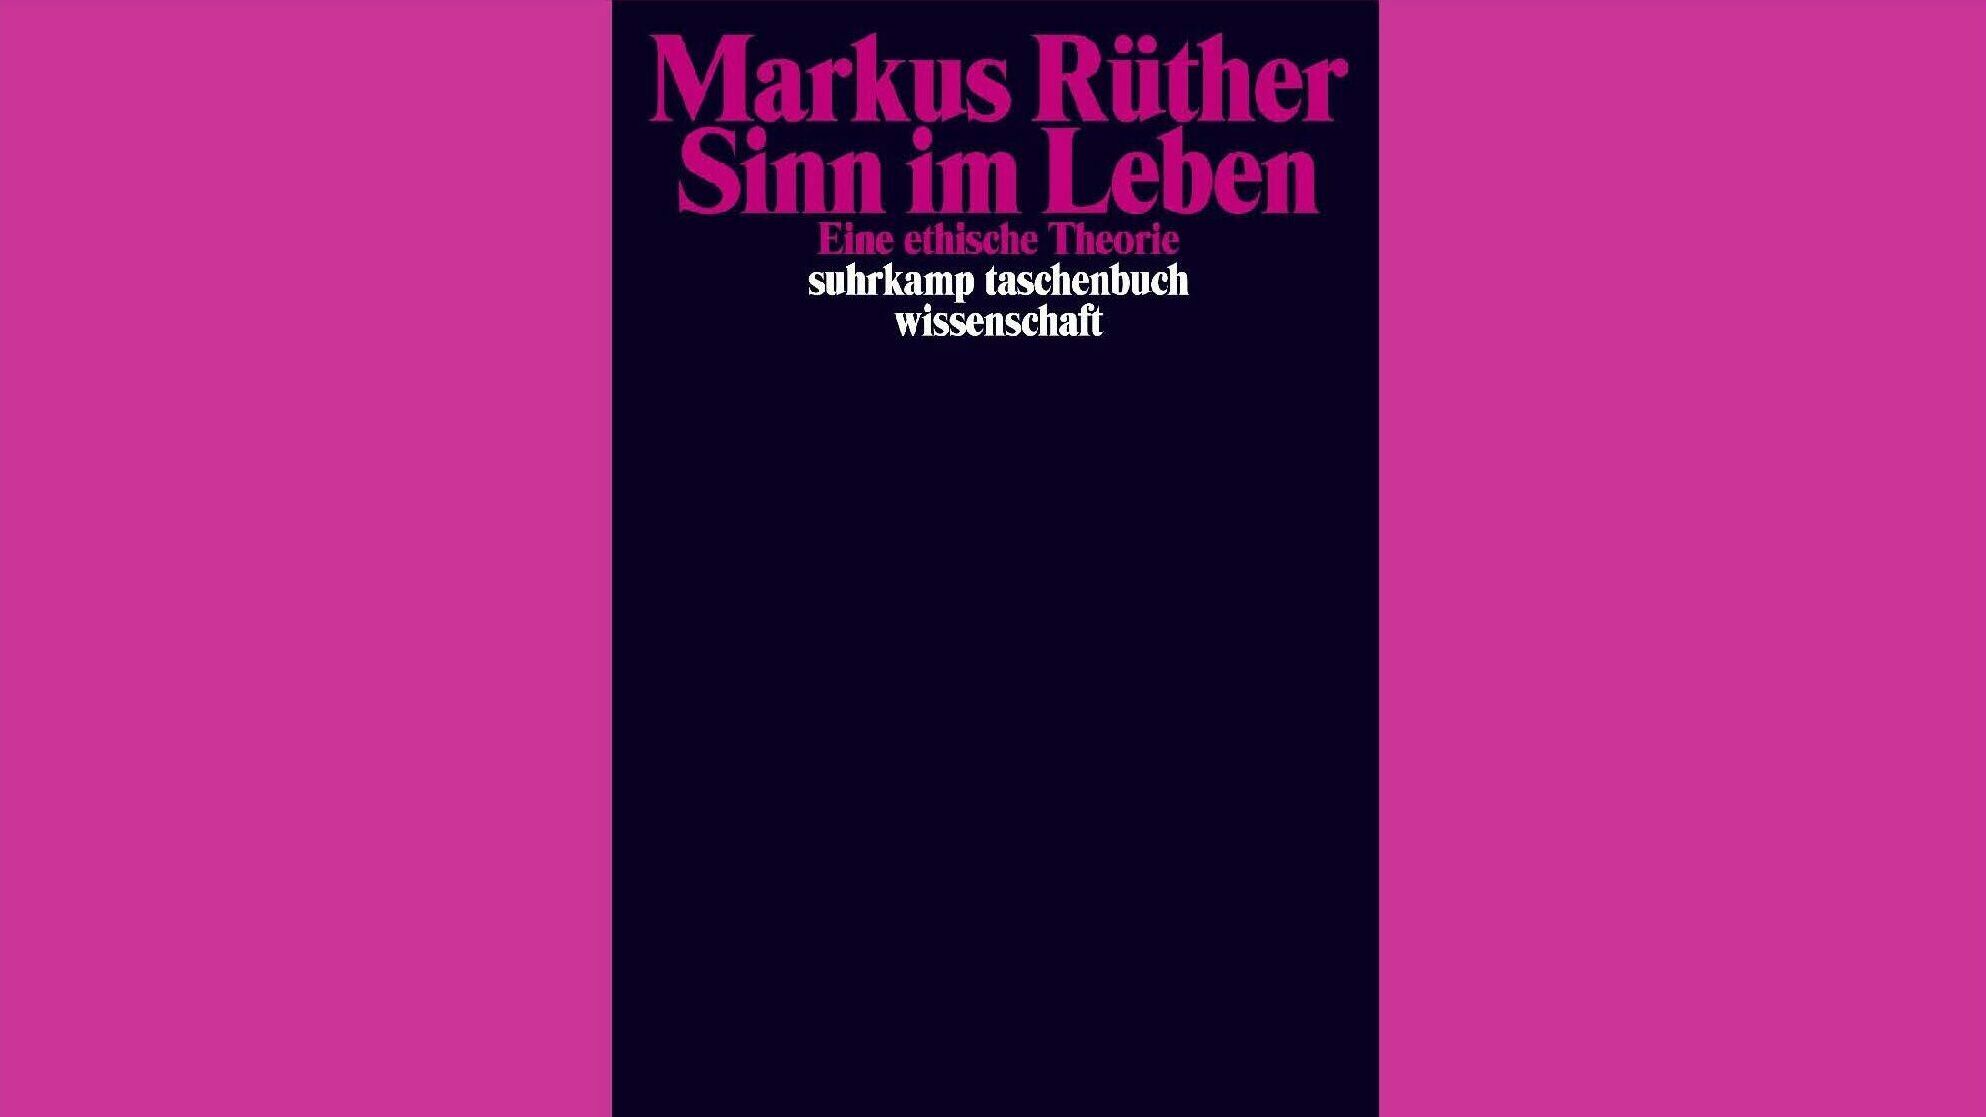 Sinn im Leben, Markus Rüther, Literatur, Philosophie, Ethik, Gesellschaft, suhrkamp taschenbuch Verlag